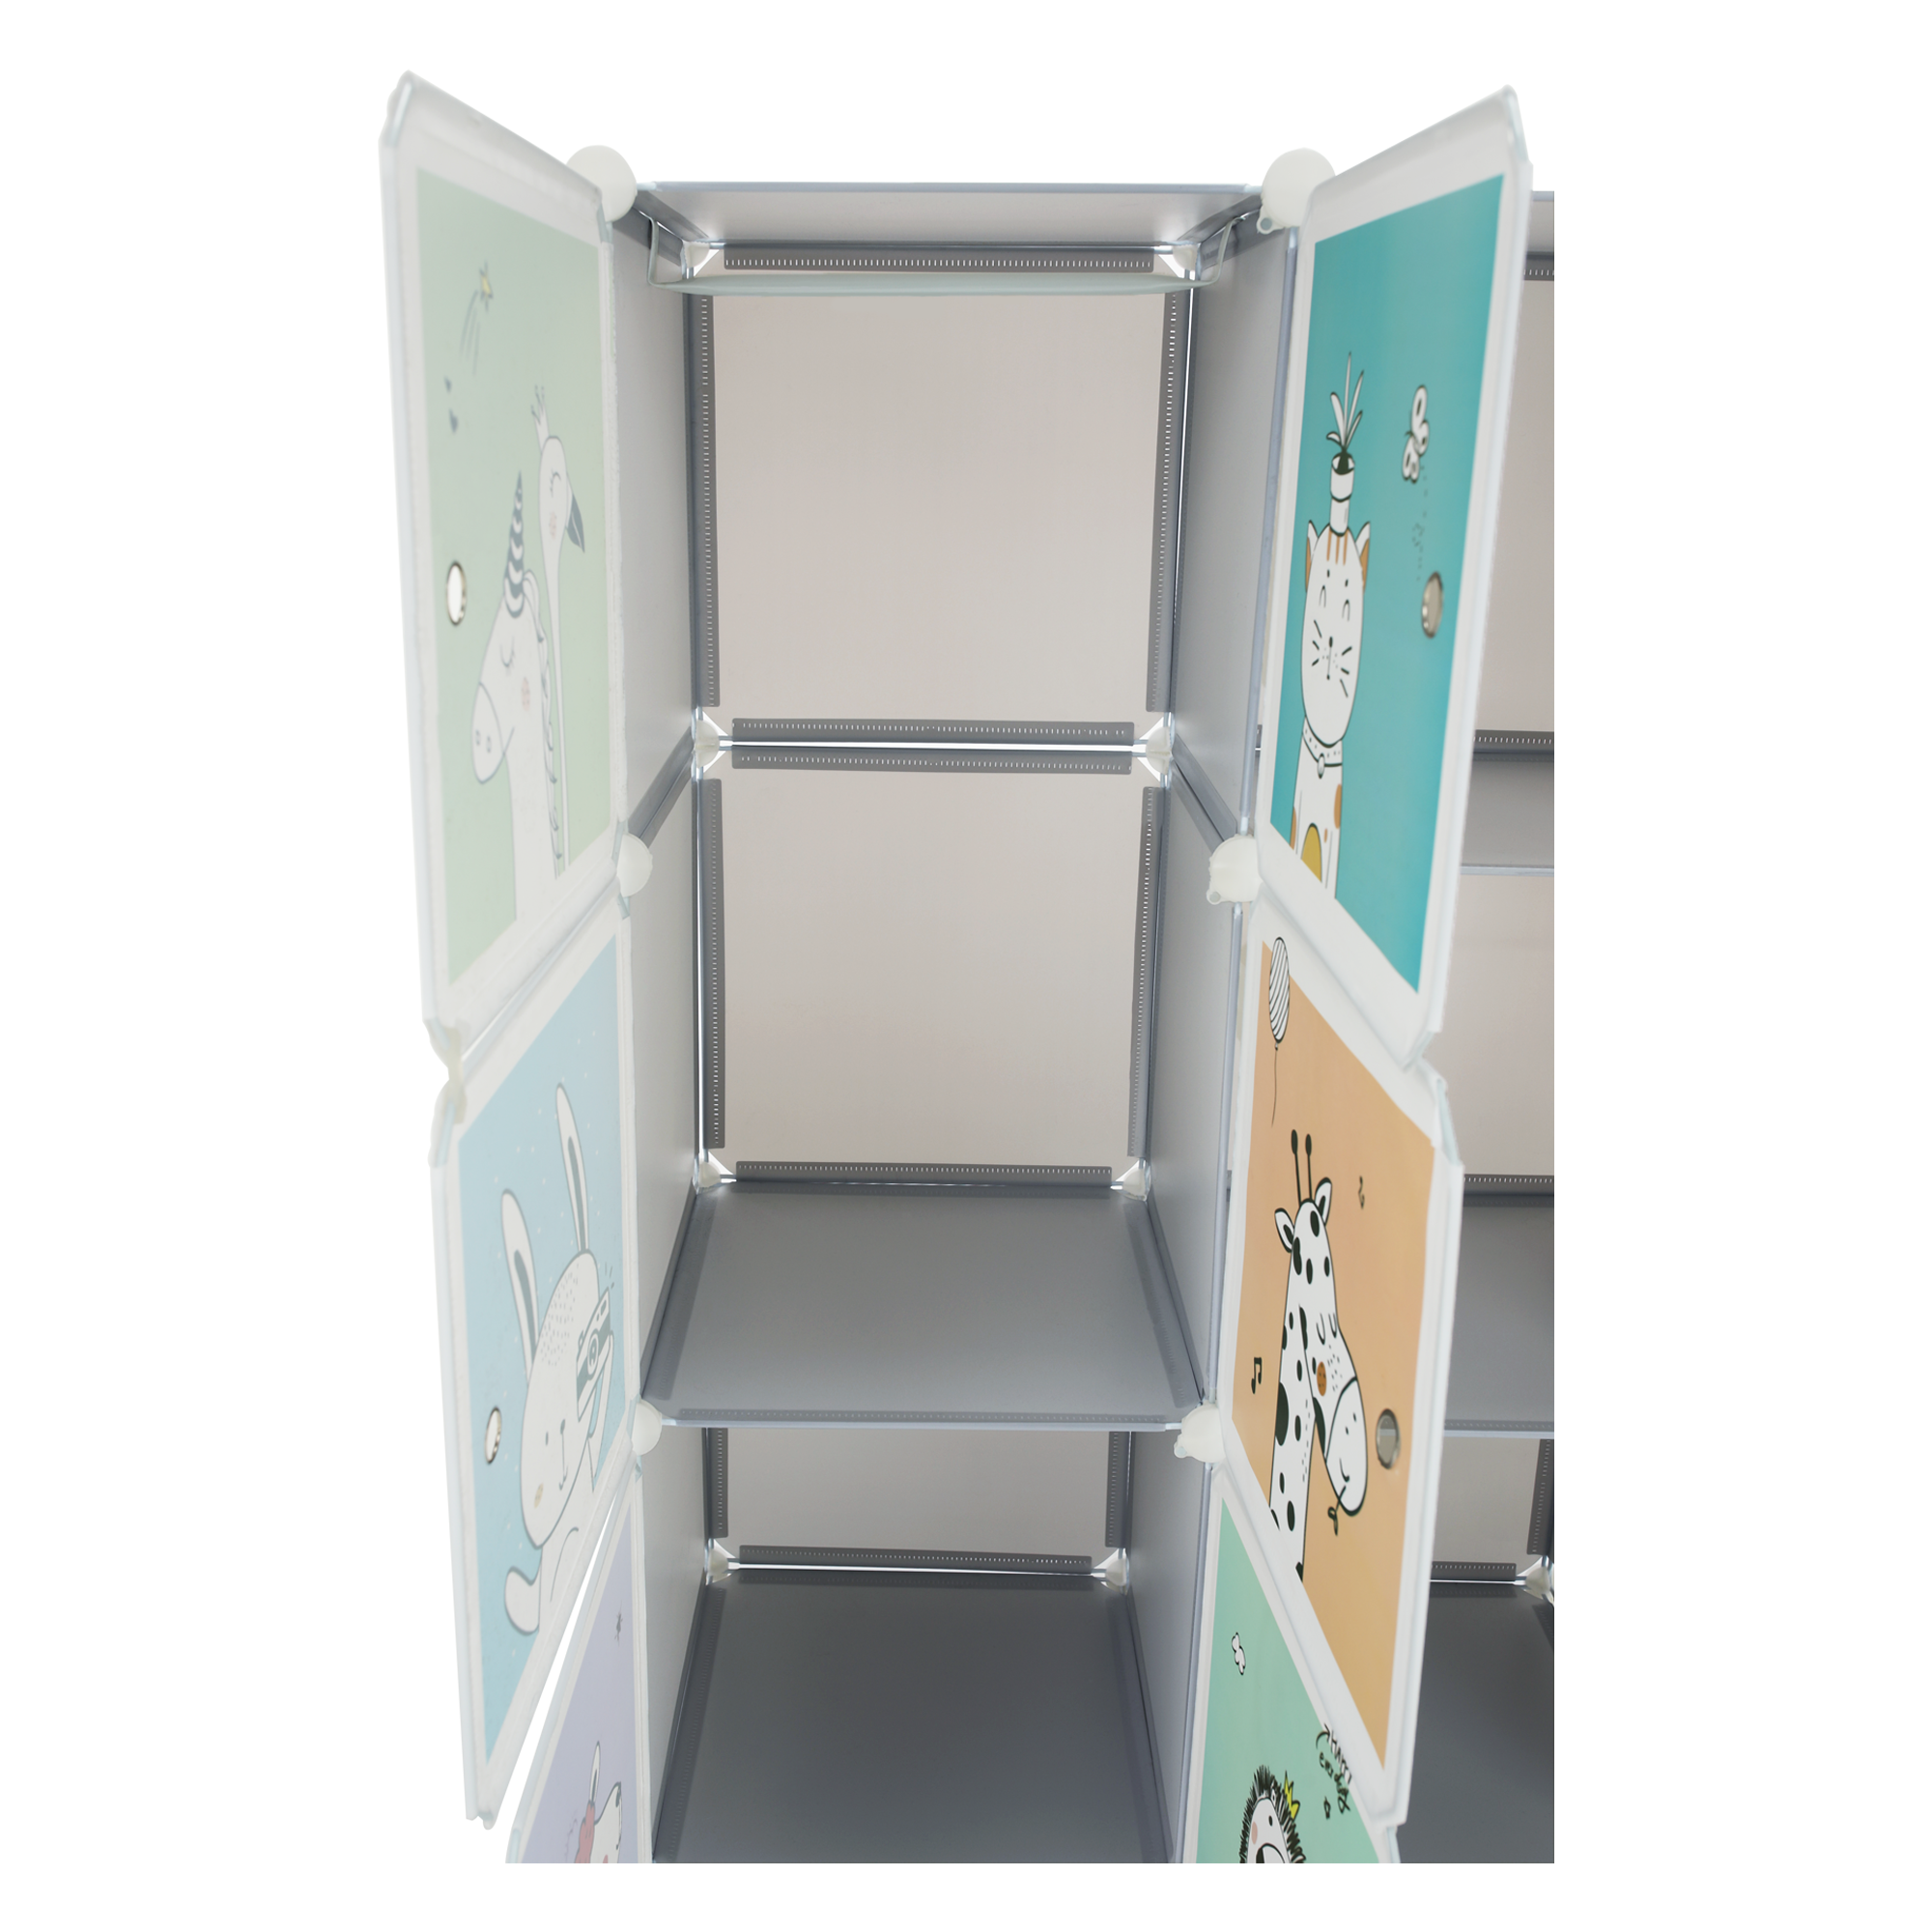 Dětská modulární skříň, šedá / dětský vzor, BIARO